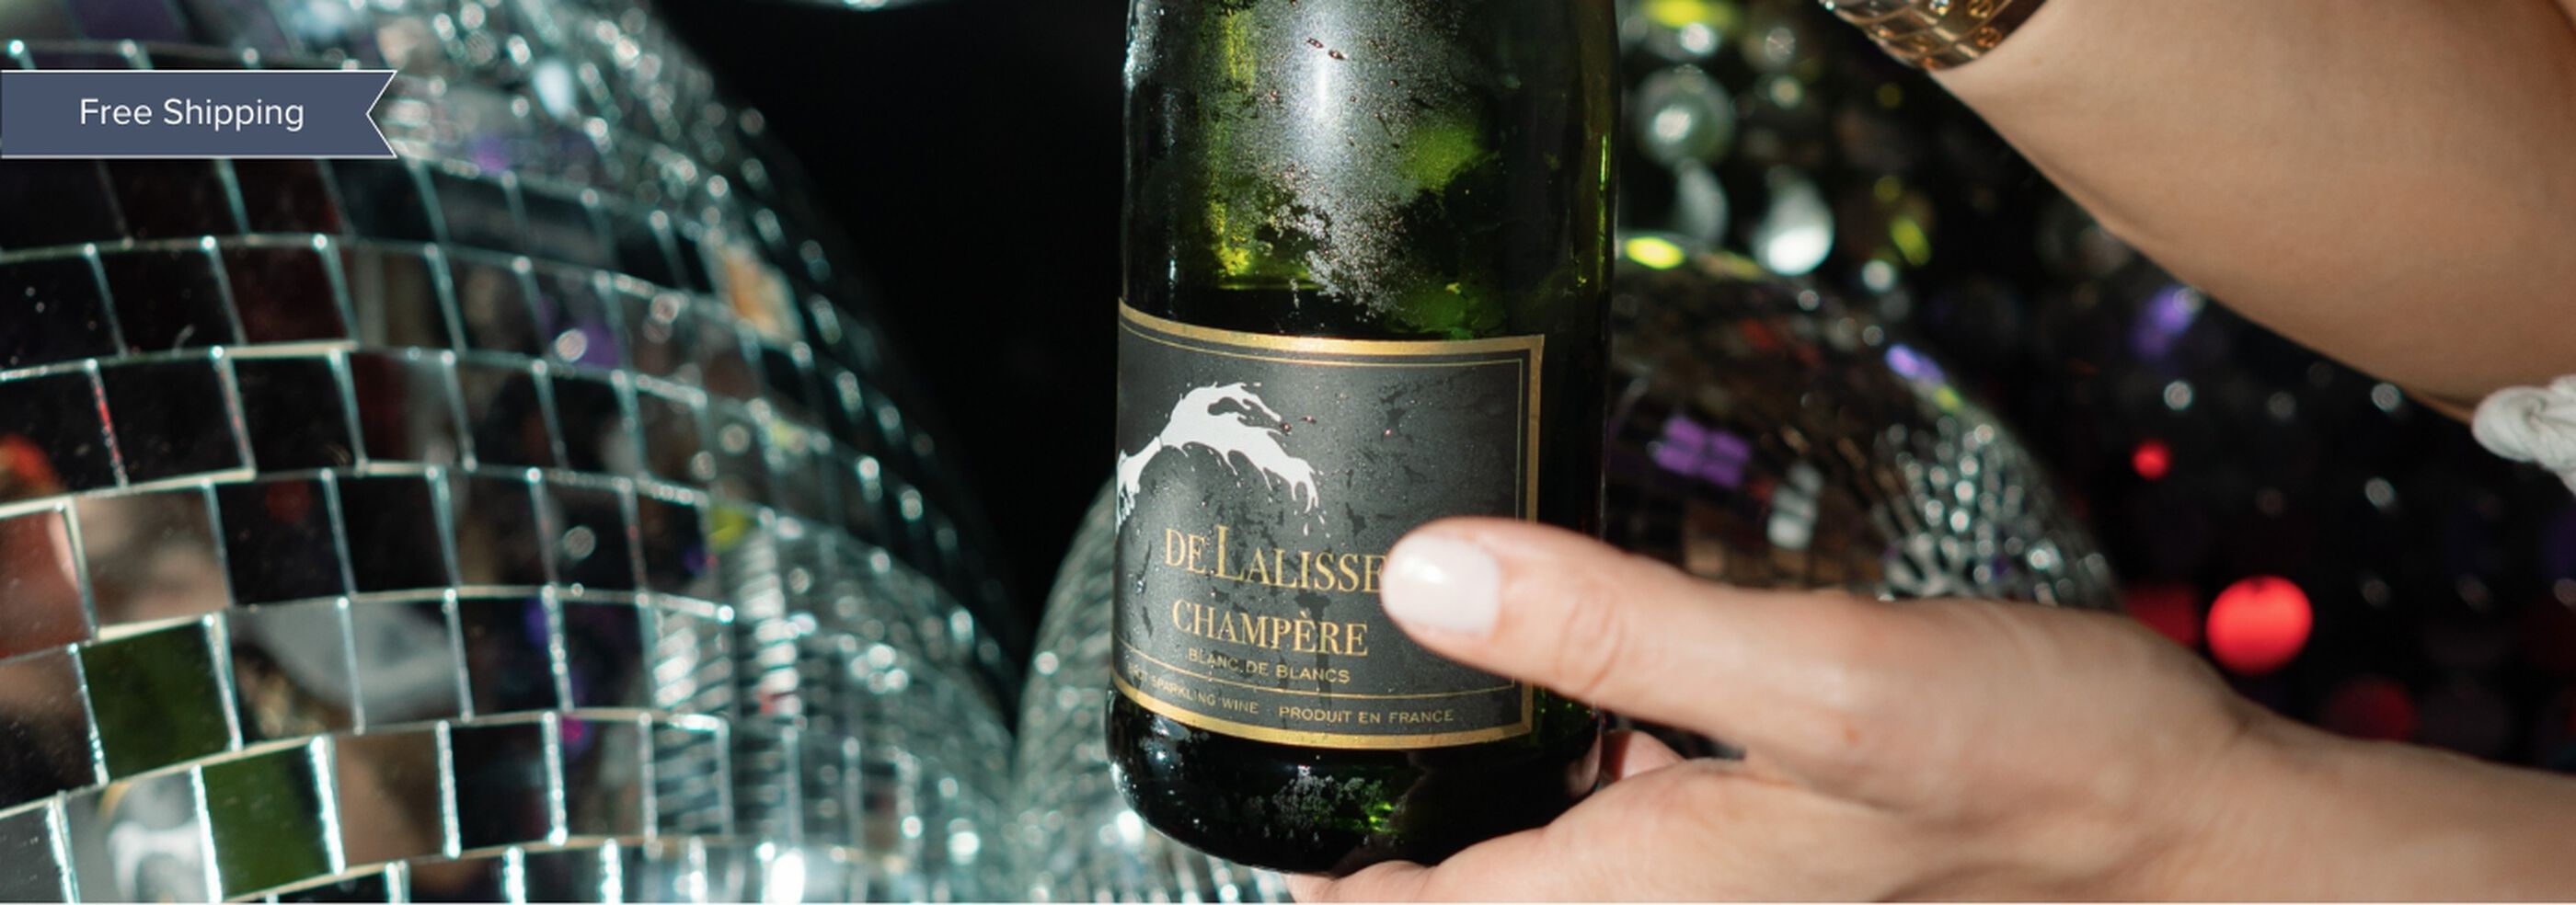 De Lalisse Champère Sparkling Wine with disco balls